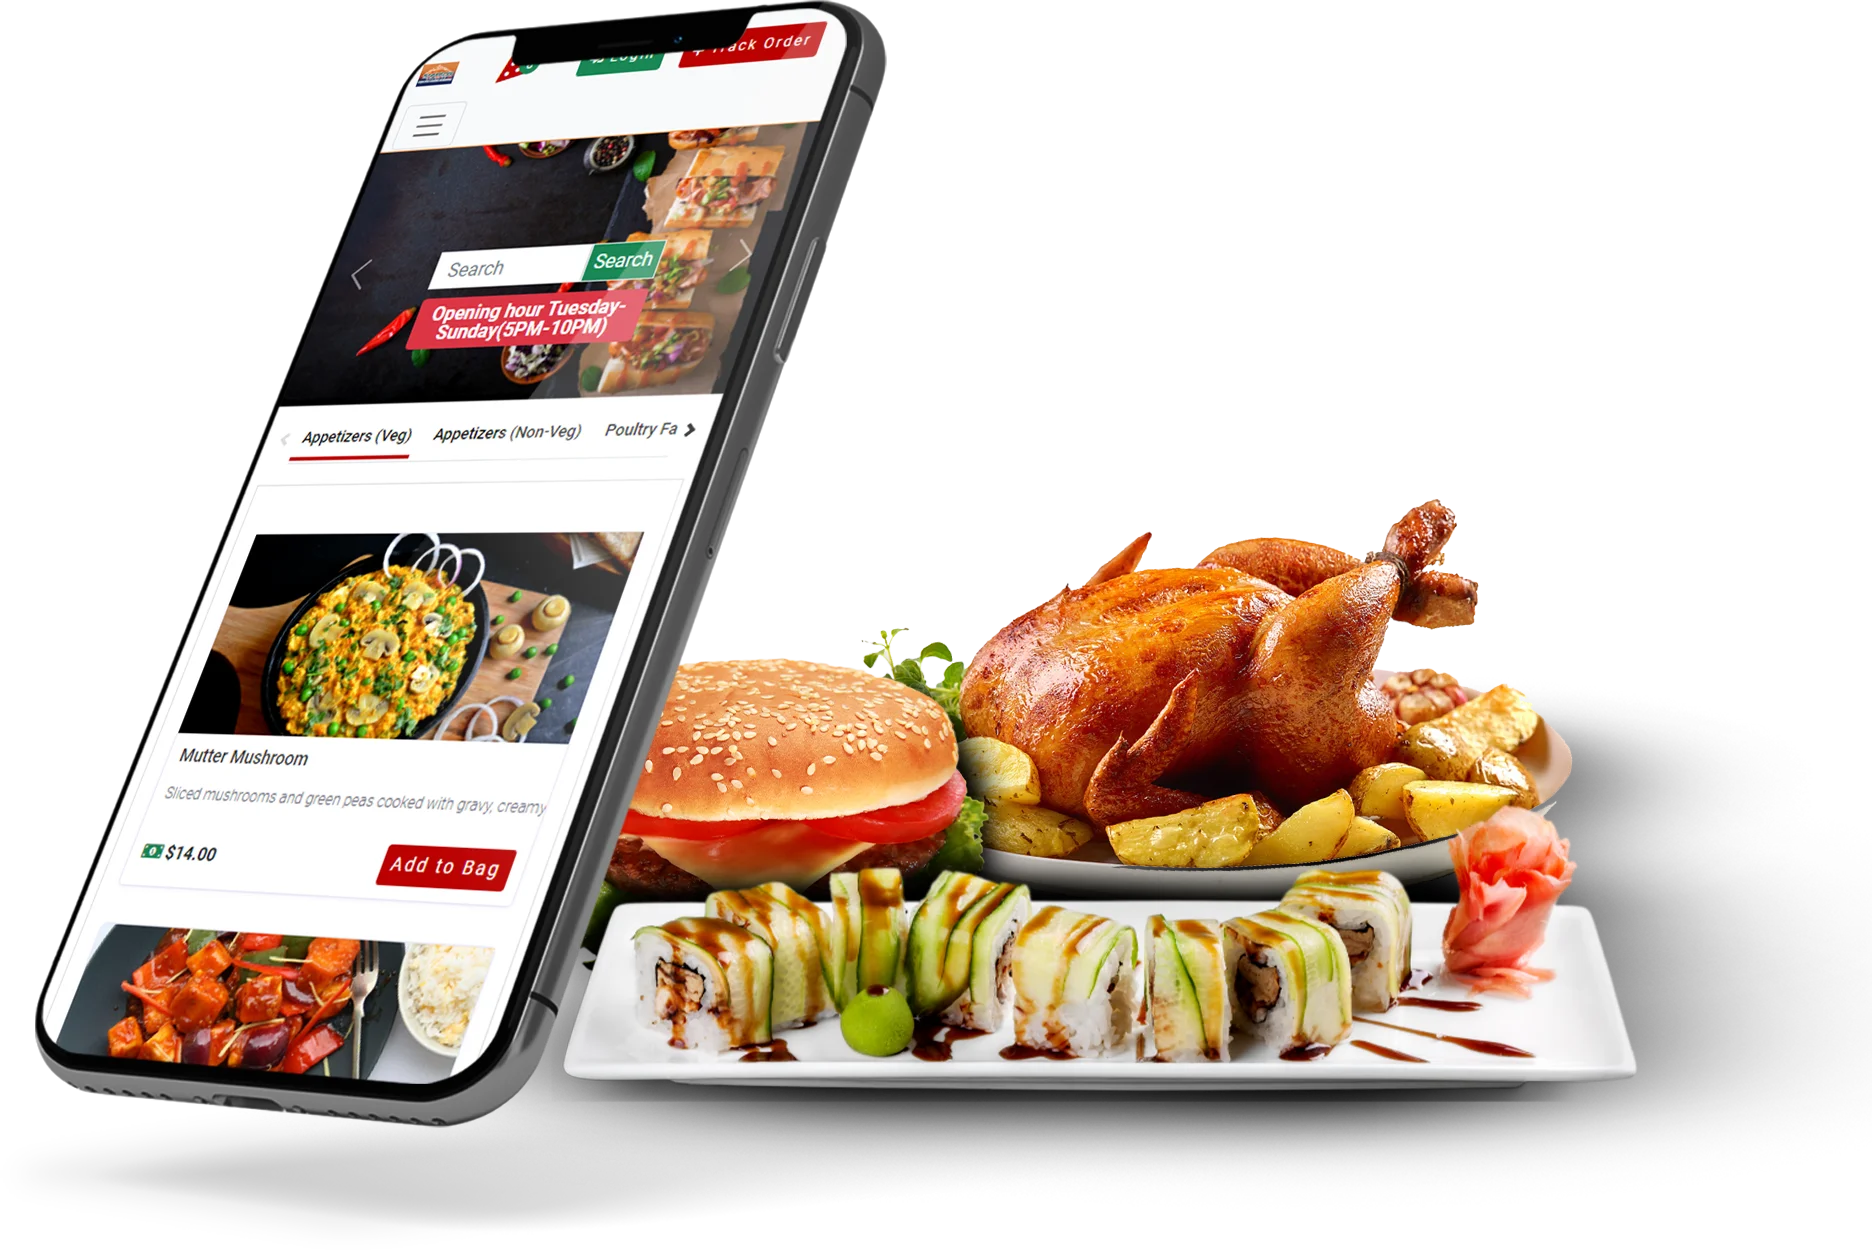 The Best Online Ordering System for Restaurants